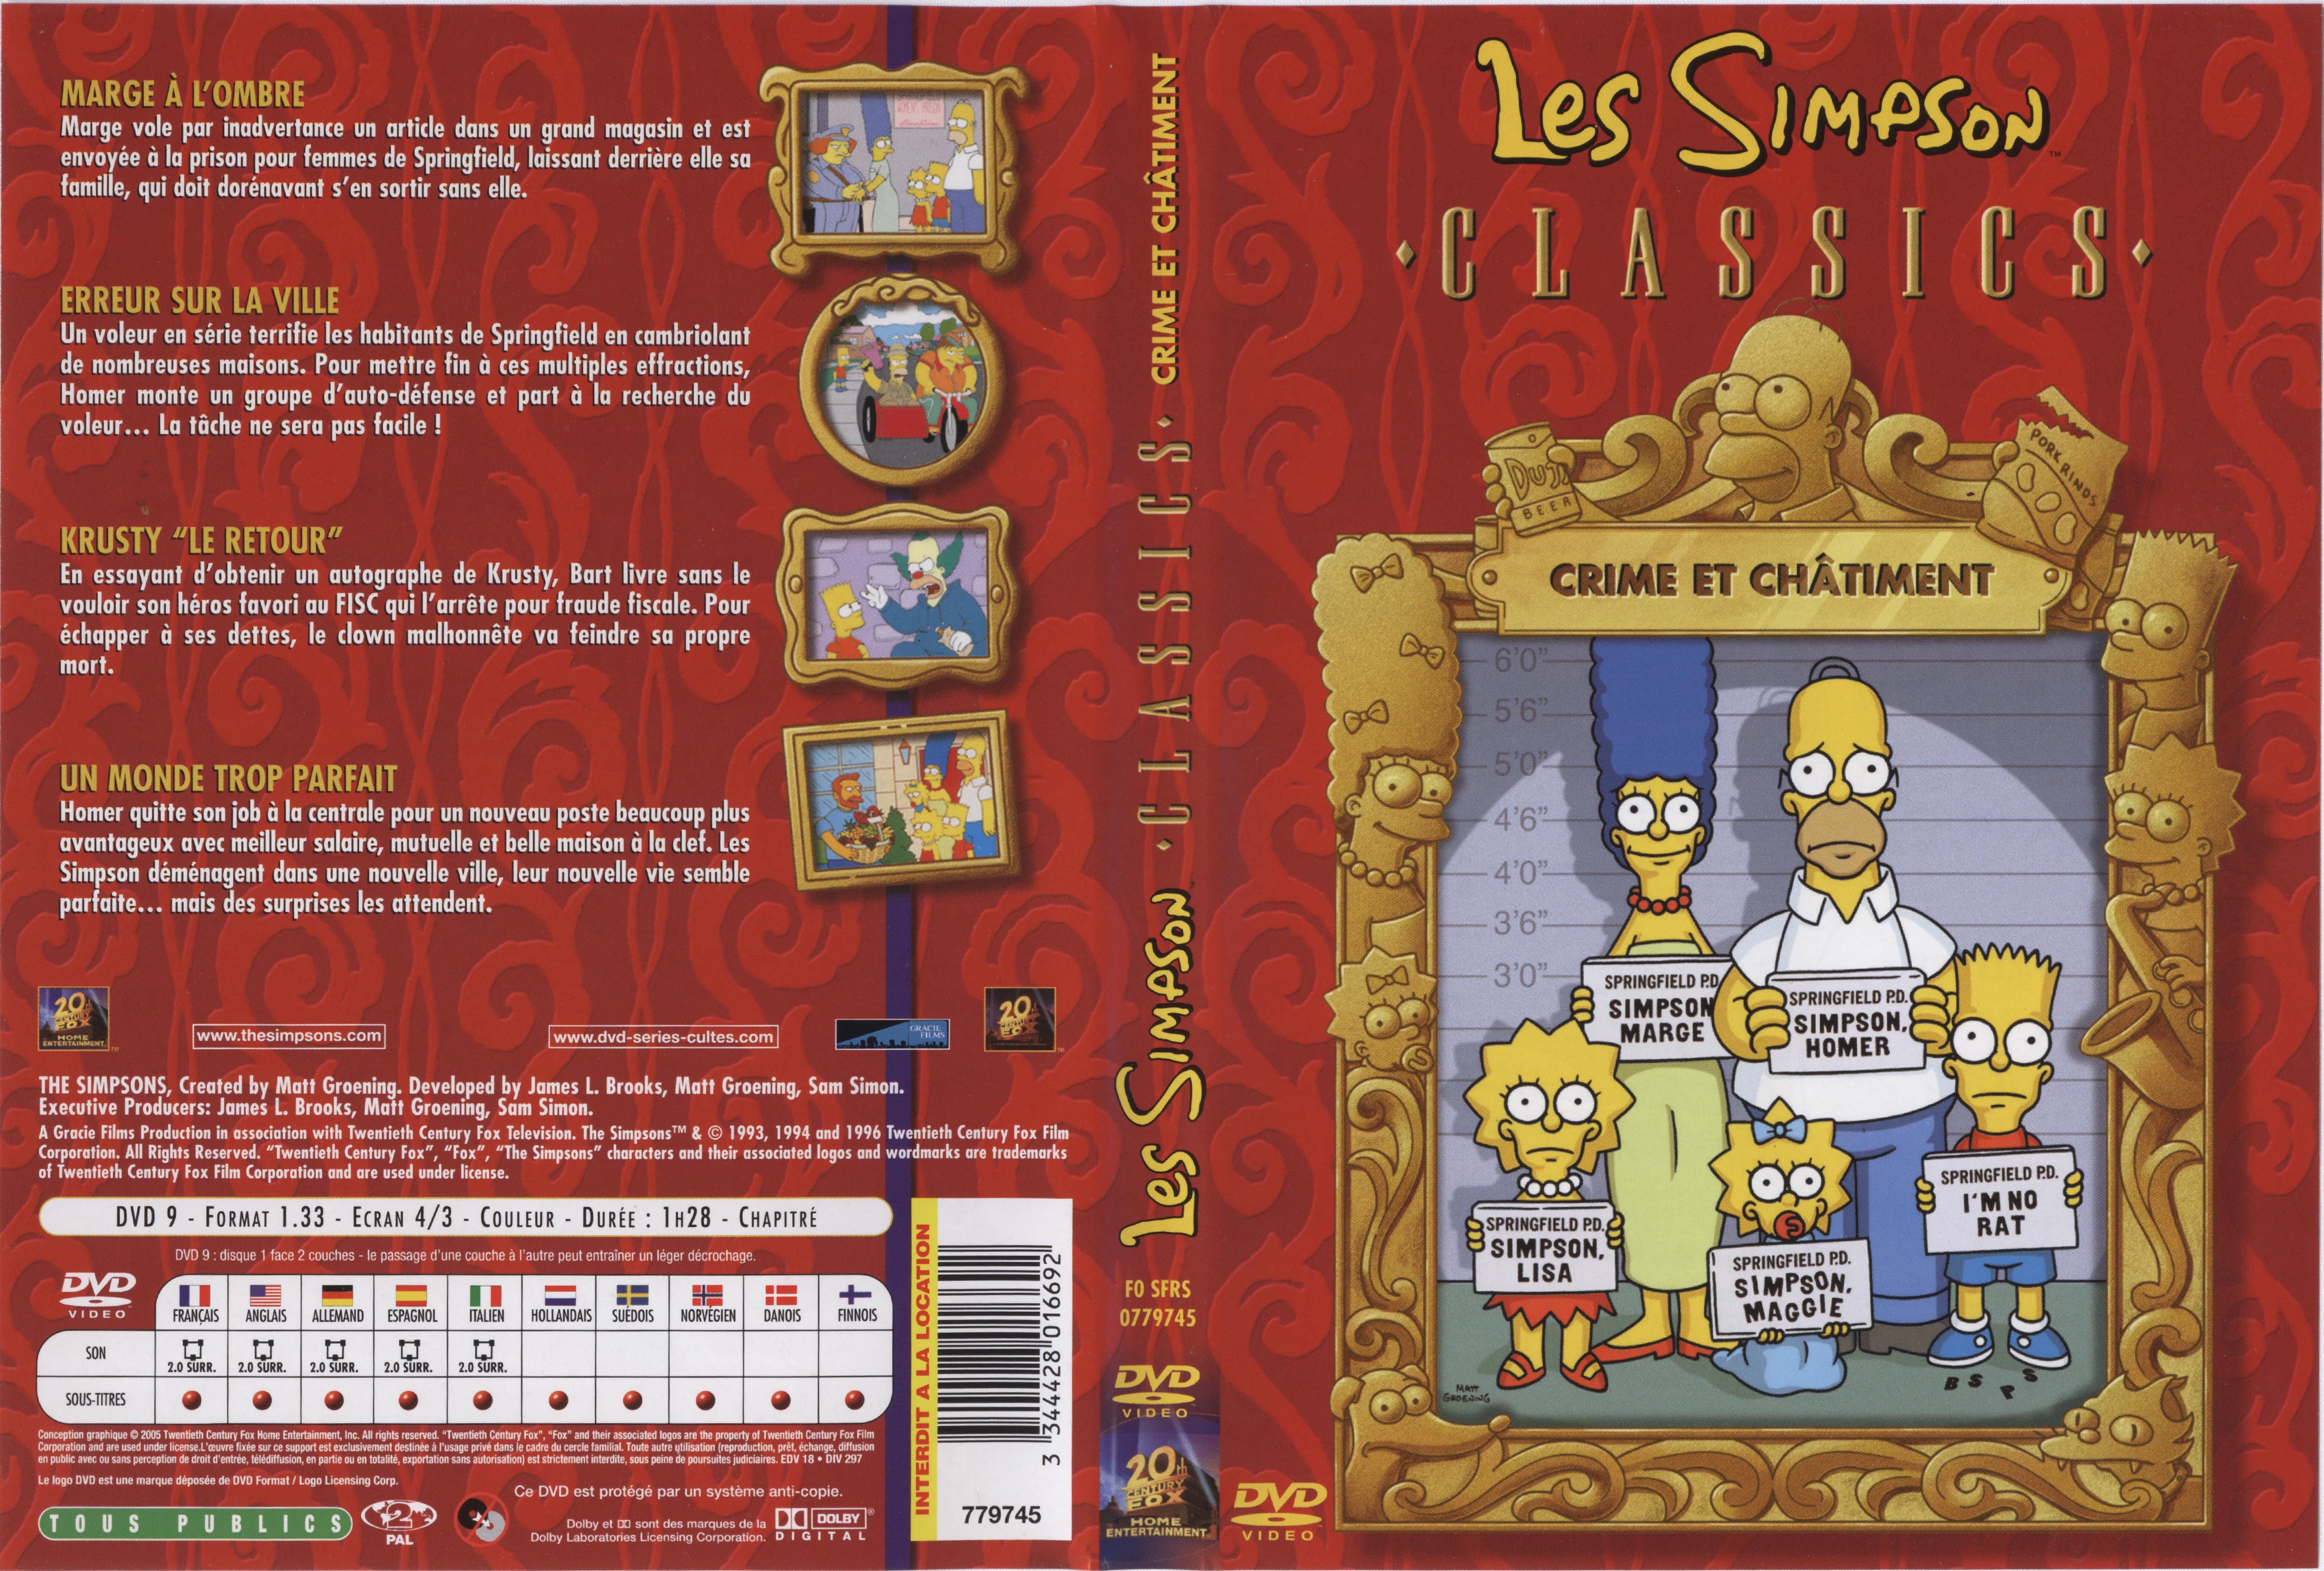 Jaquette DVD Les simpsons crime et chatiment